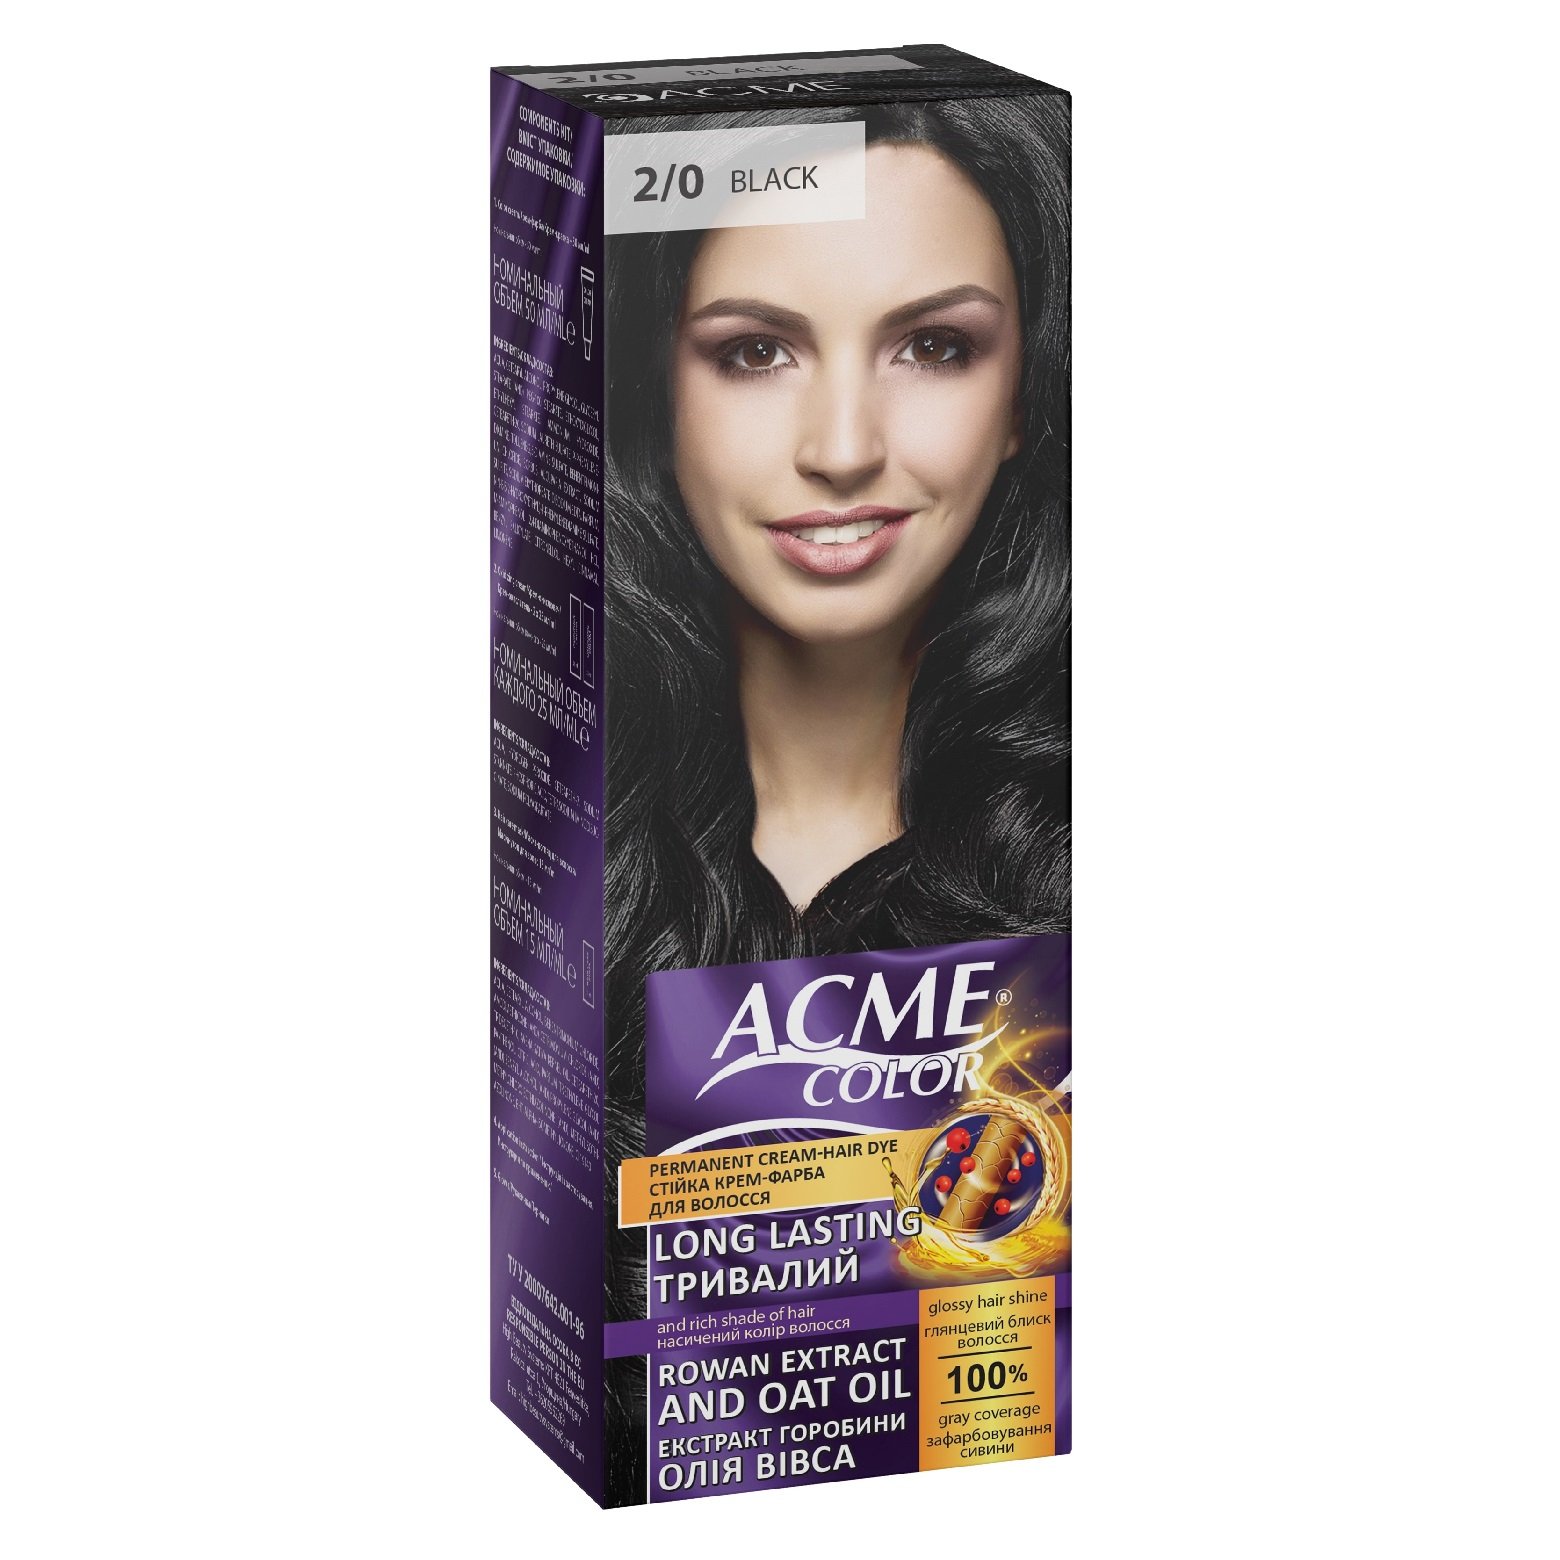 Крем-фарба для волосся Acme Color EXP, відтінок 2/0 (Чорний), 115 мл - фото 1